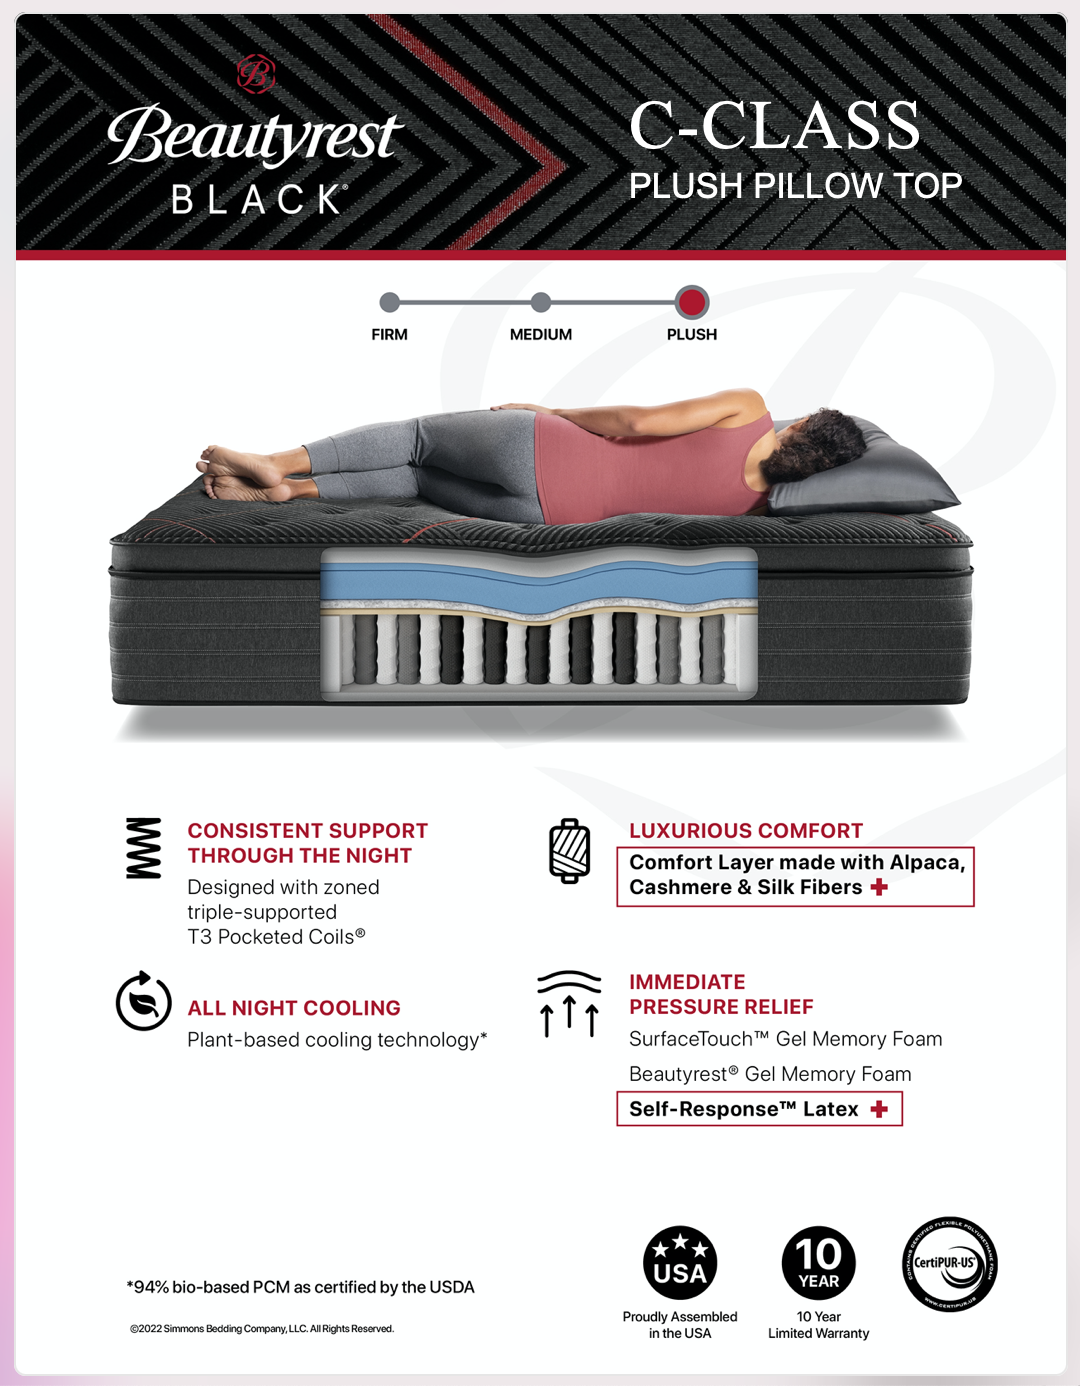 Beautyrest Black C-Class Plush Pillow Top mattress specs